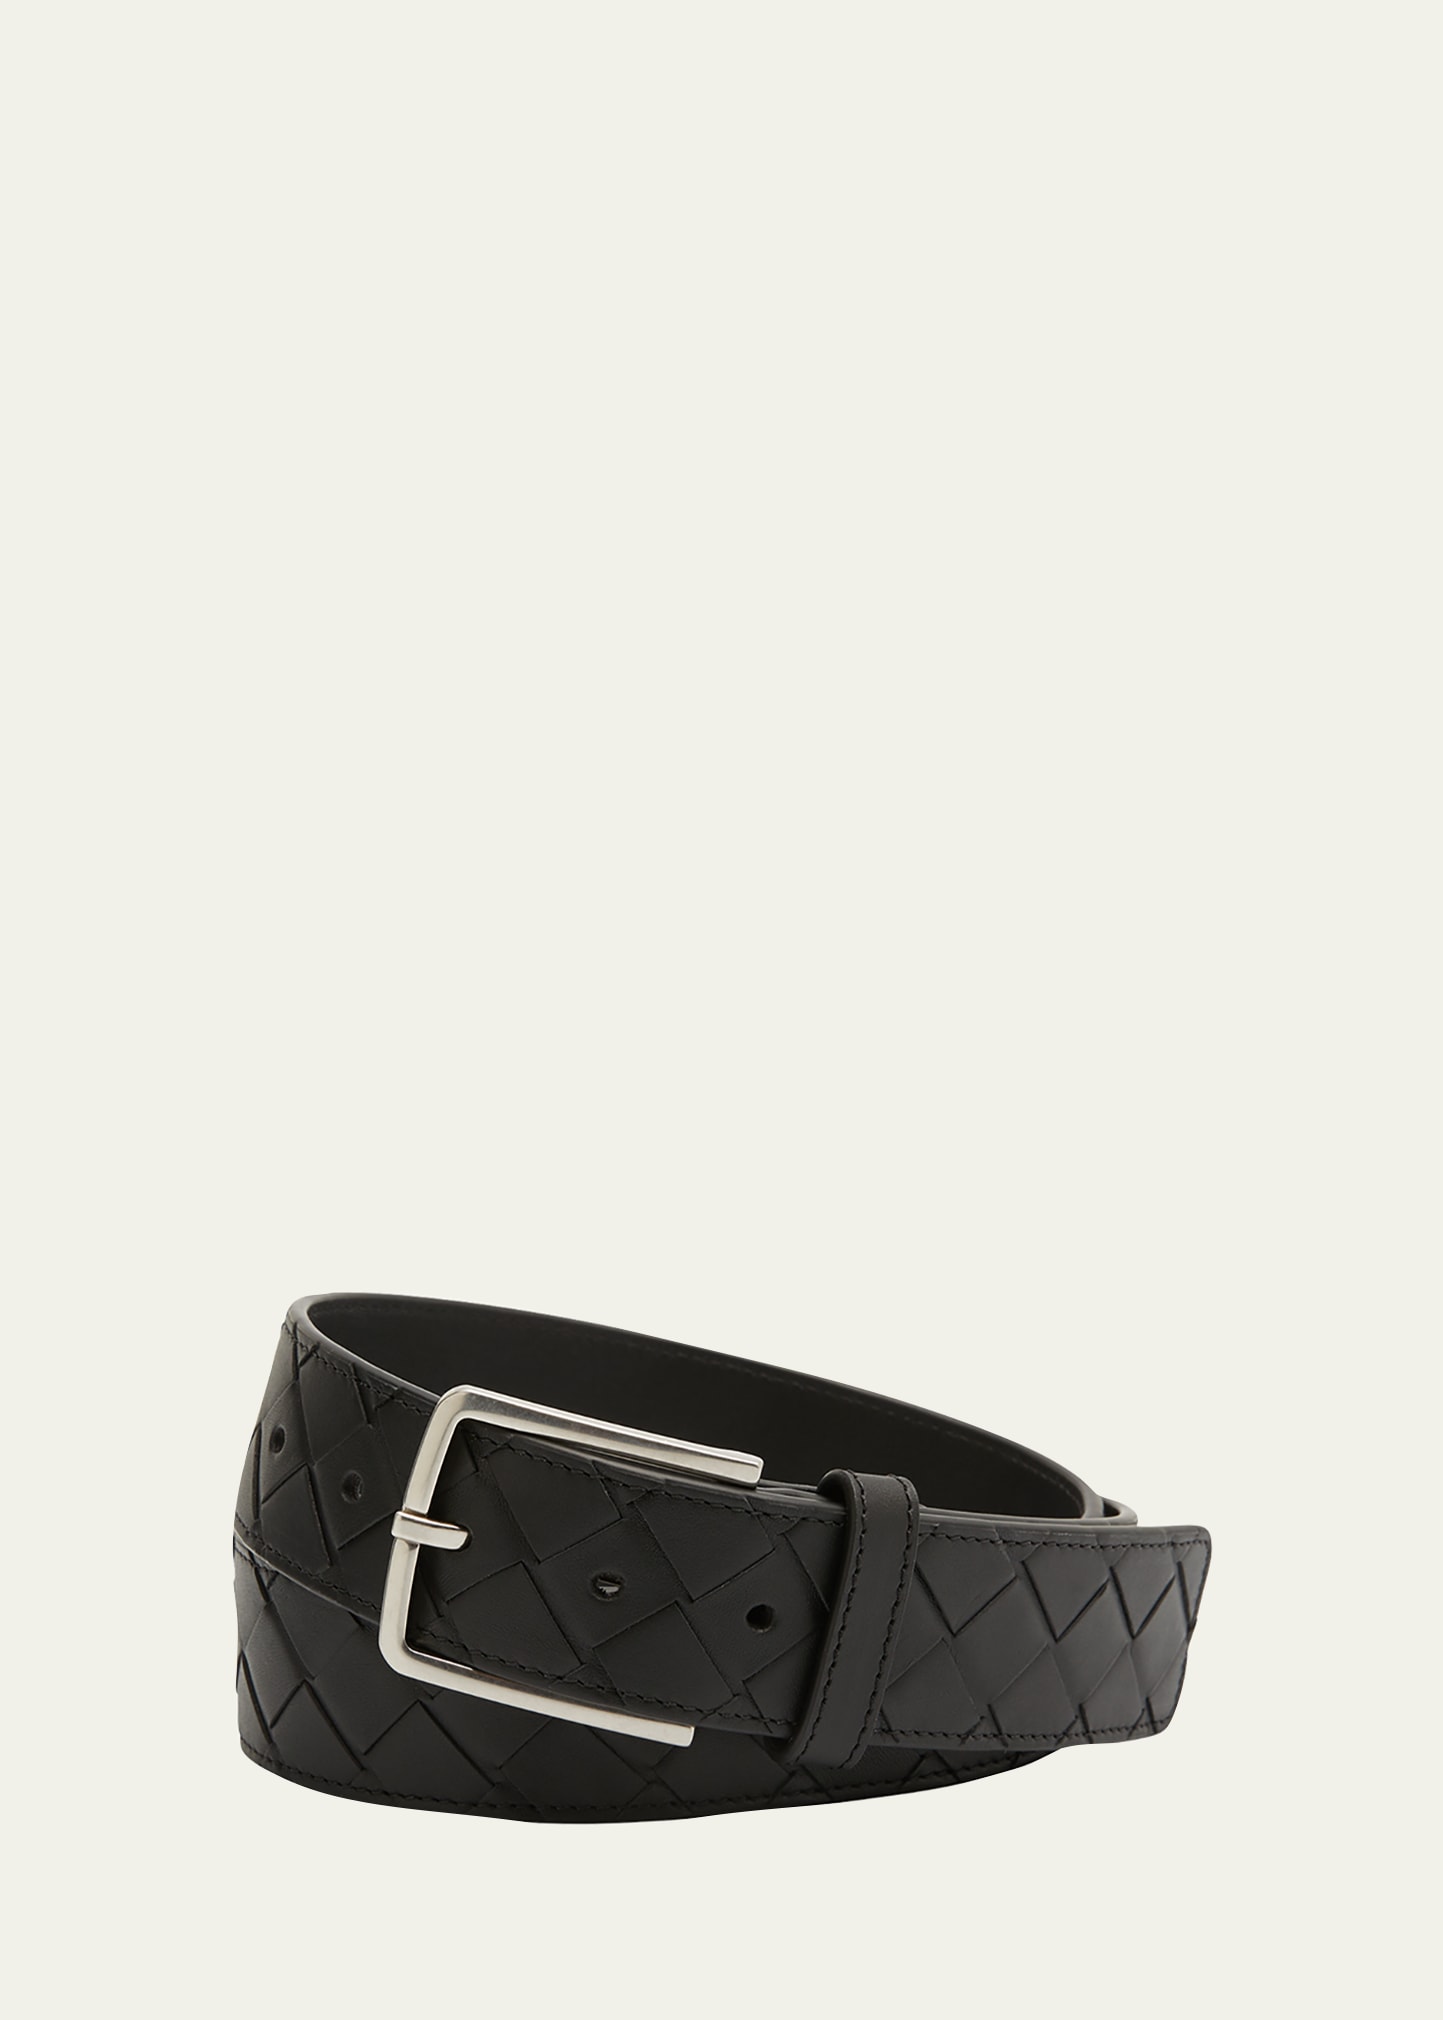 Bottega Veneta Men's Cintura Intrecciato Leather Belt In Black Silver